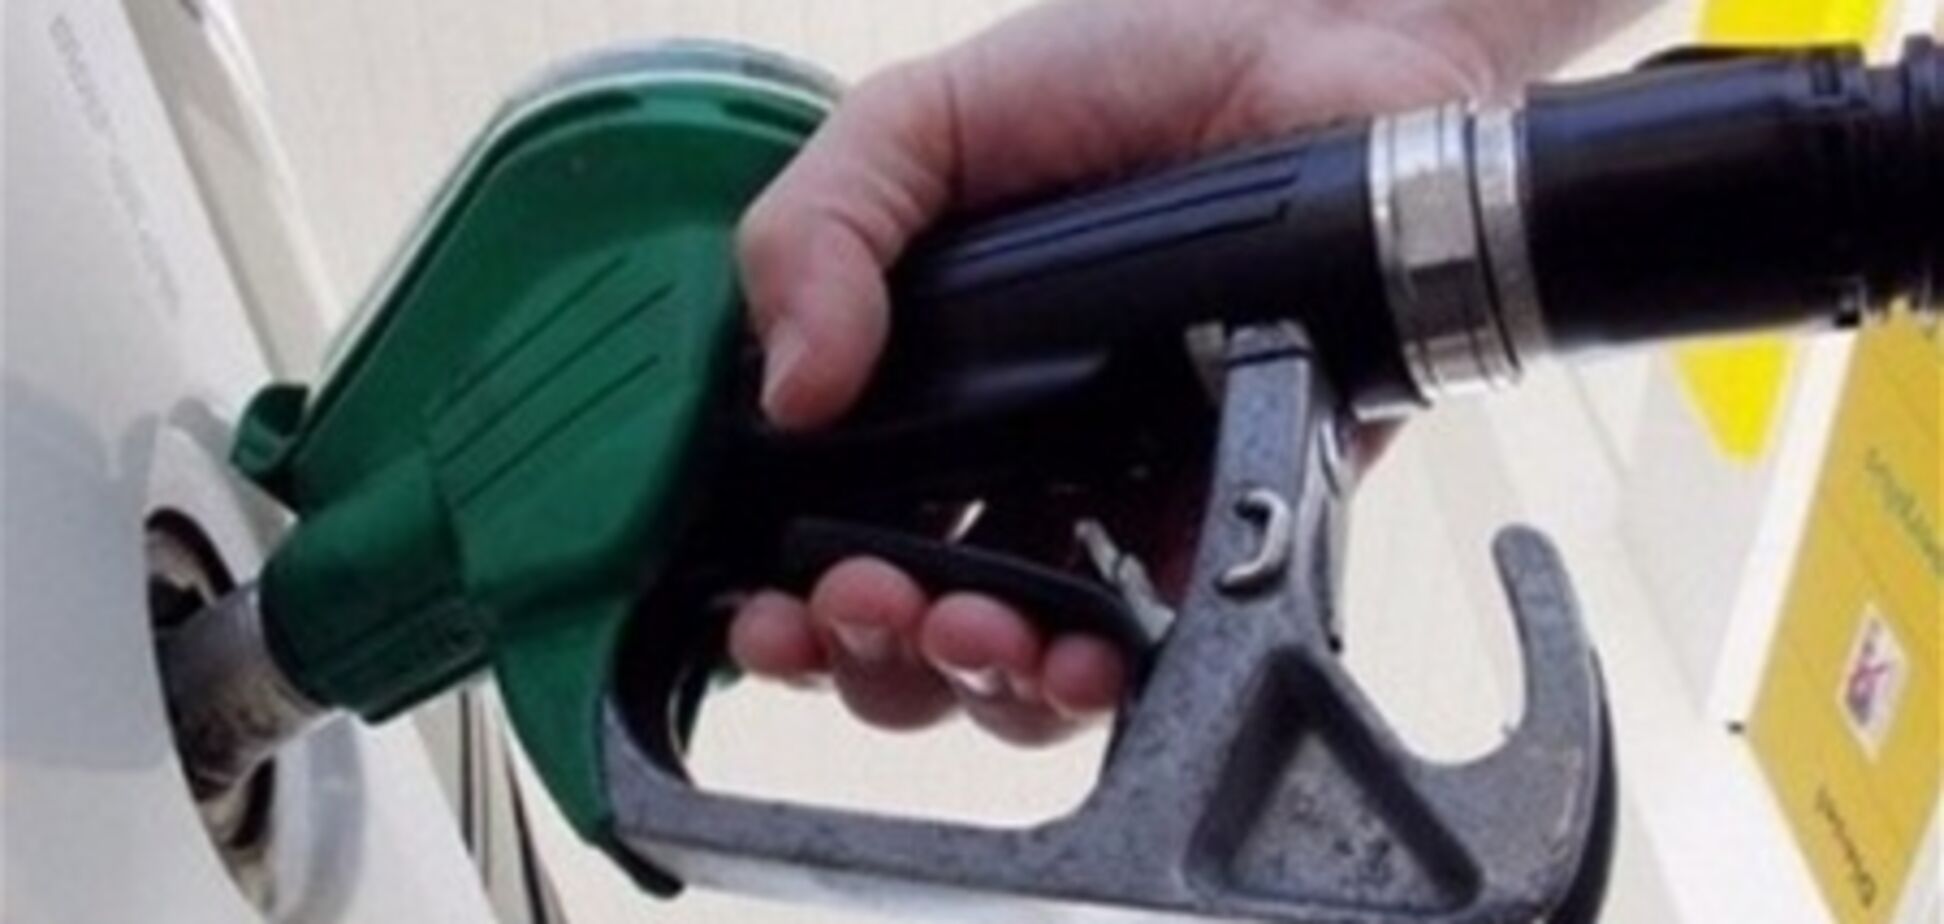  Бензин может подорожать на 2 гривны за литр - эксперт